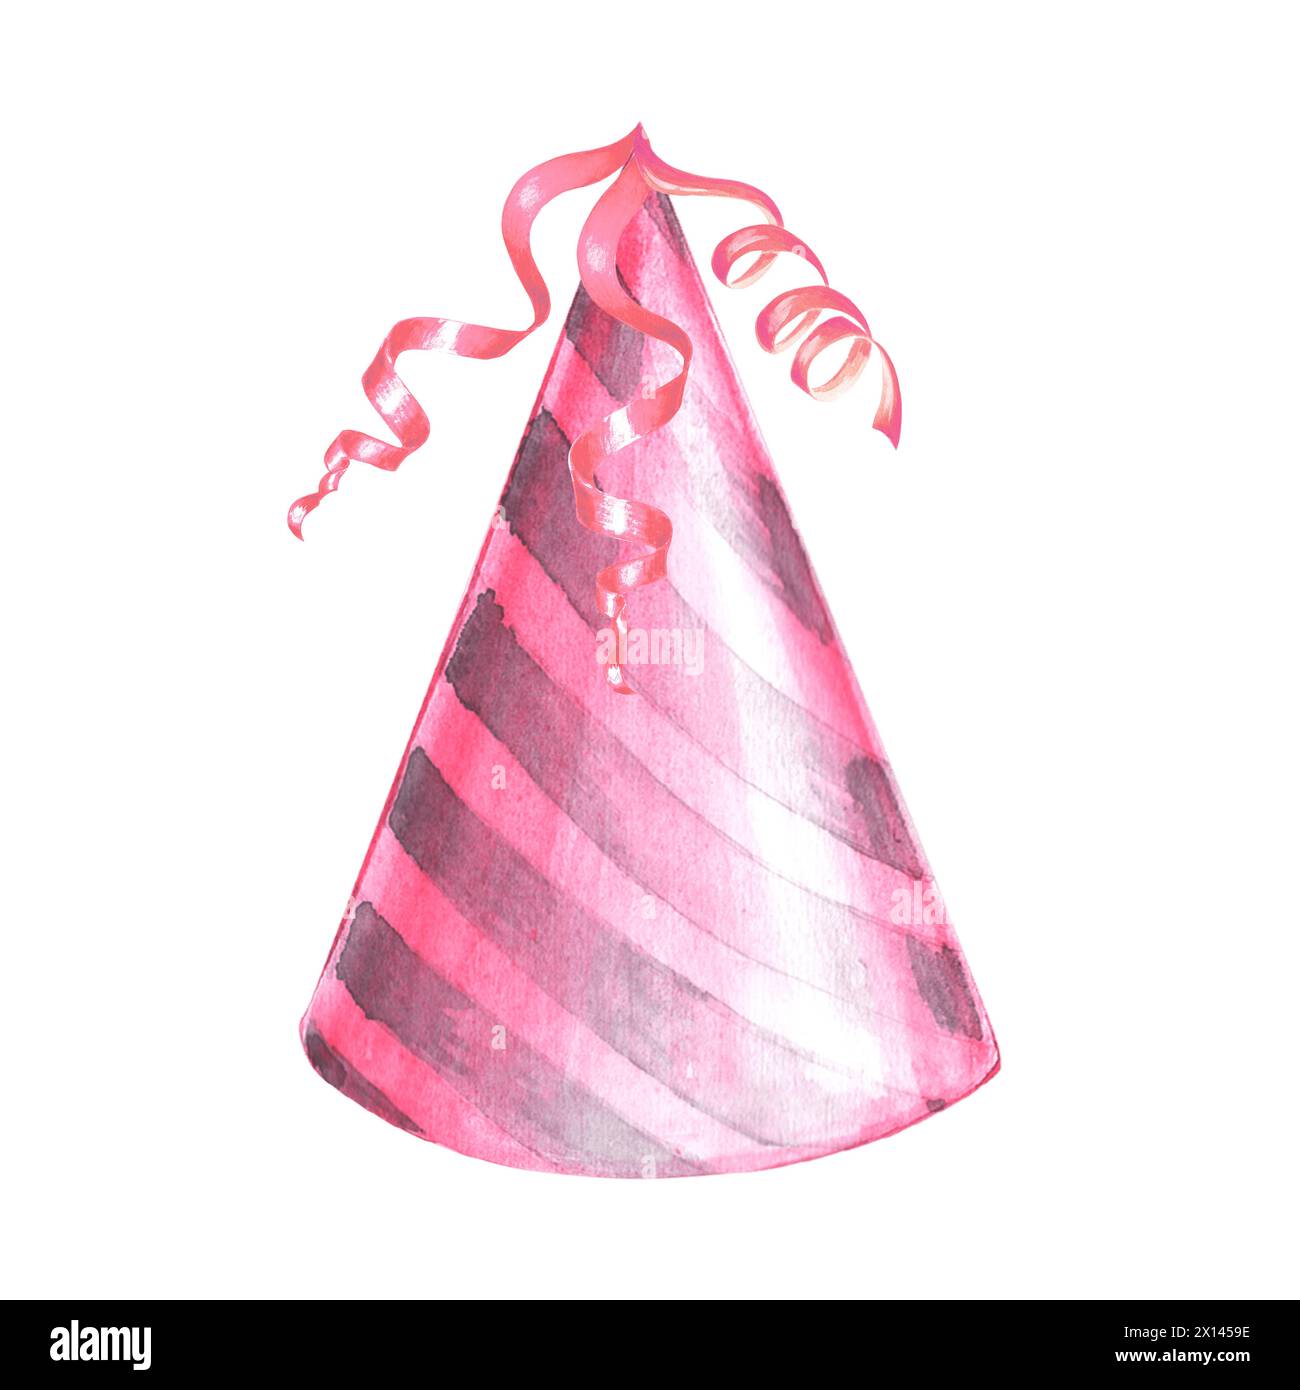 Cappello da festa con nastri rosa a righe acquerello disegnato a mano. Accessori festivi per feste di compleanno e feste per bambini. Isolato Foto Stock